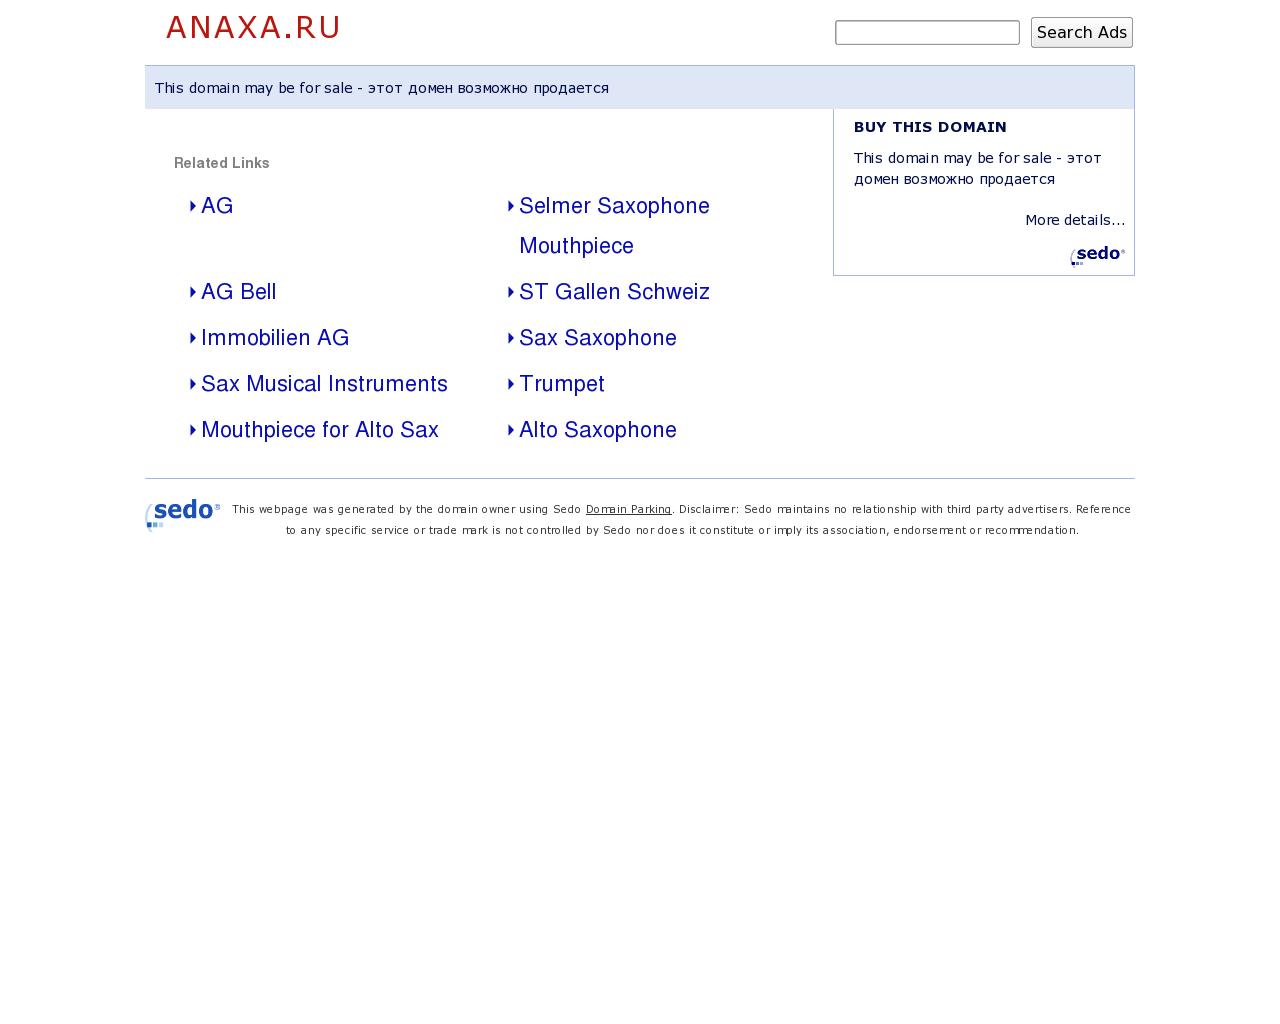 Изображение сайта anaxa.ru в разрешении 1280x1024